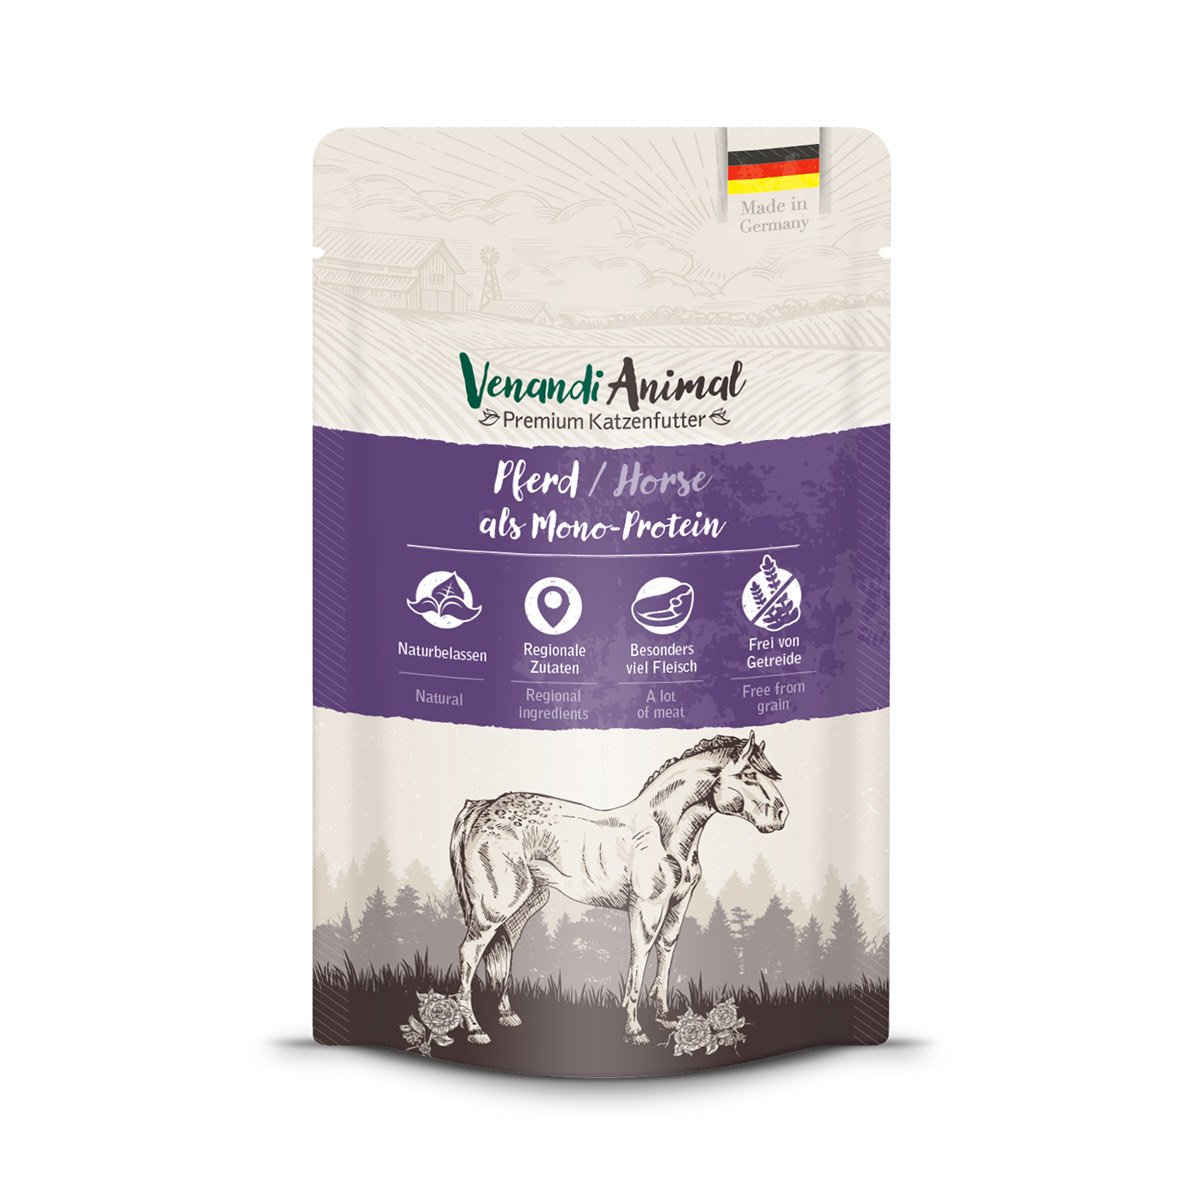 Venandi Animal - Pferd als Monoprotein 24x125g